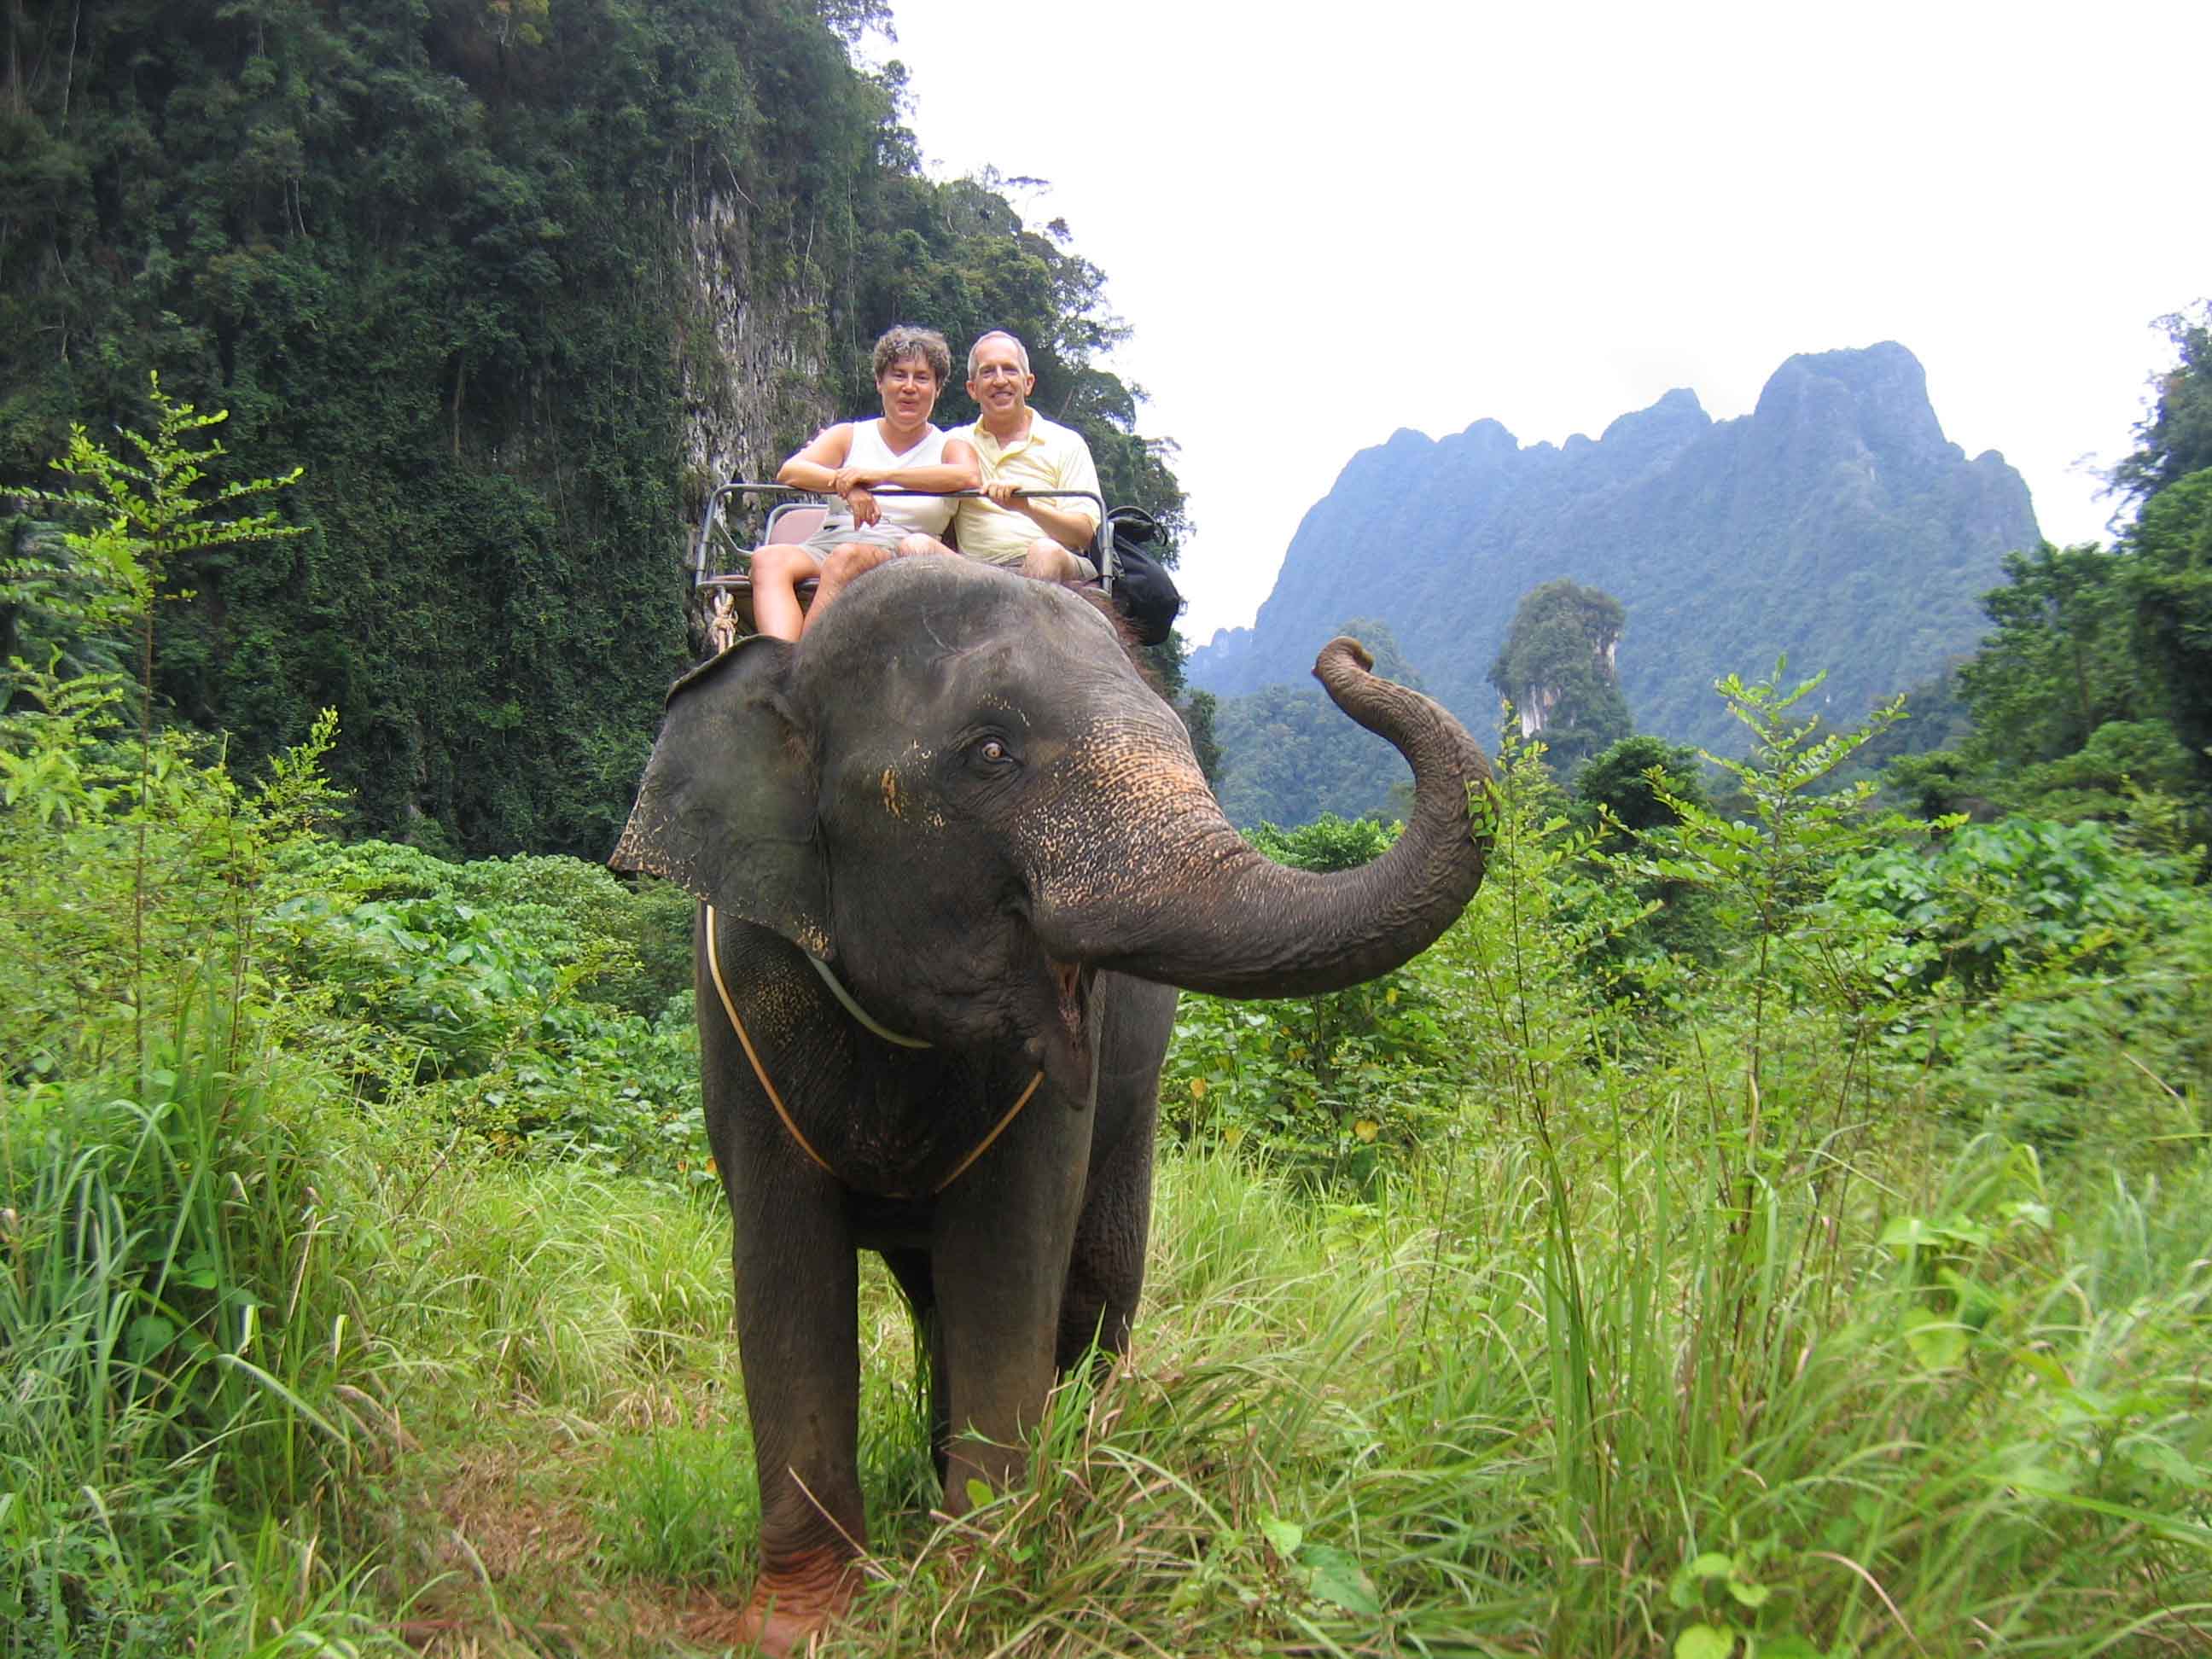 An elephant can climb. Экскурсия к слонам в Адлере. Мир наизнанку туристы на слонах.